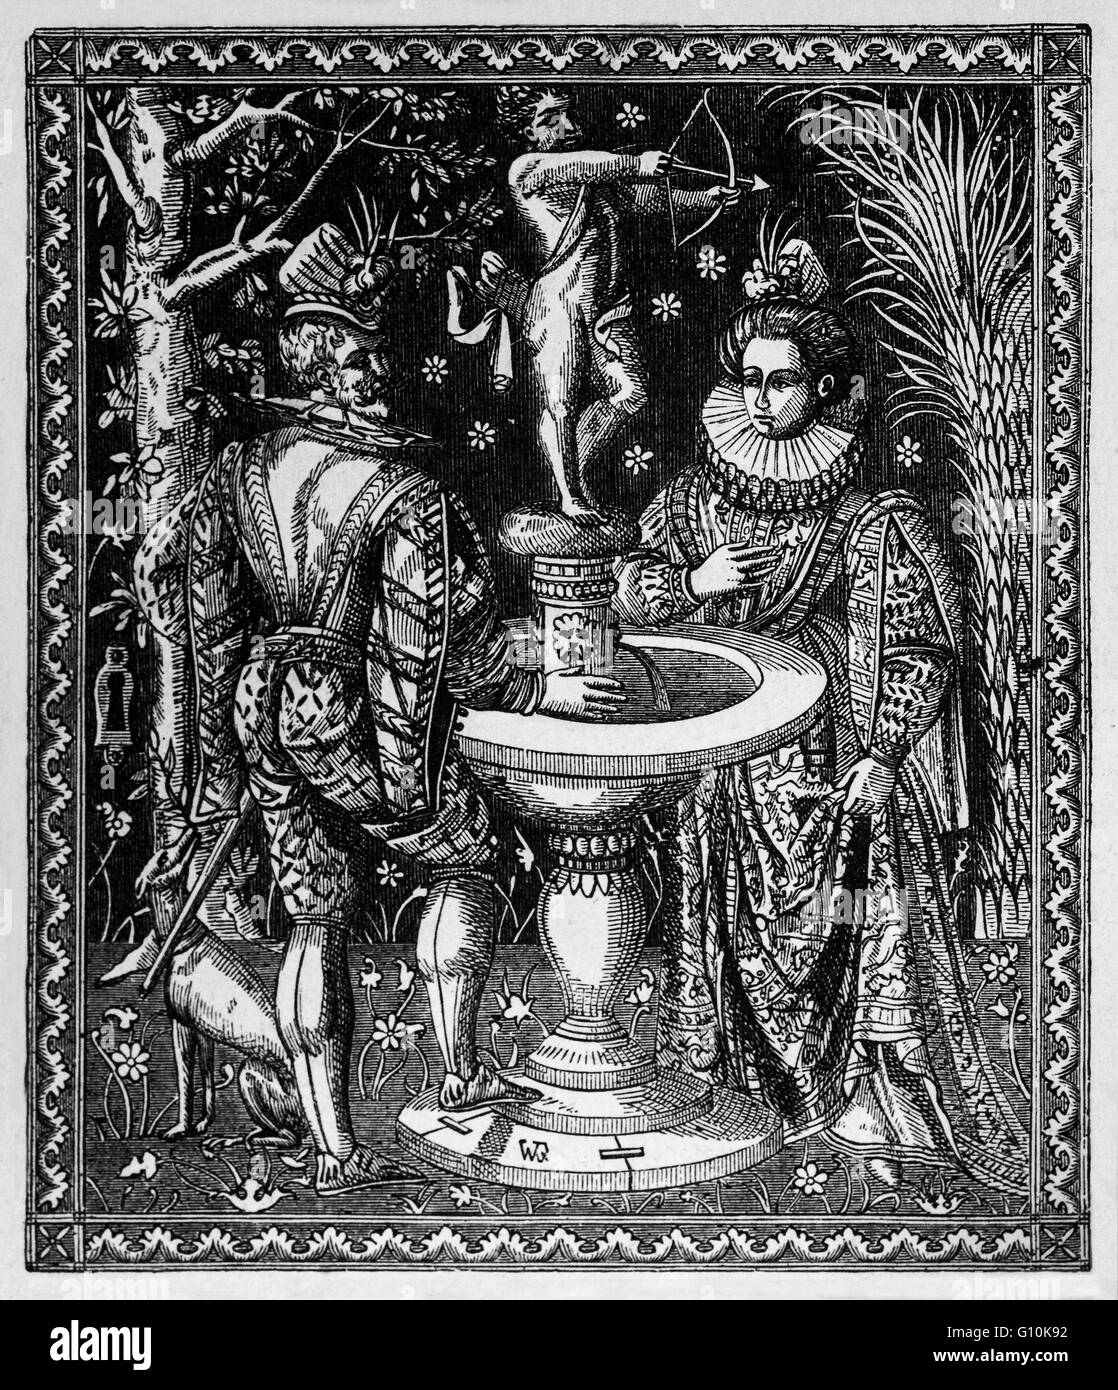 La teca di matrimonio di Filippo II di Spagna il suo matrimonio con Maria ho nel 1554. Egli era il re di Spagna, Re del Portogallo, Re di Napoli e Sicilia, e durante il suo matrimonio con la regina Maria I fu Re di Inghilterra e Irlanda. Foto Stock